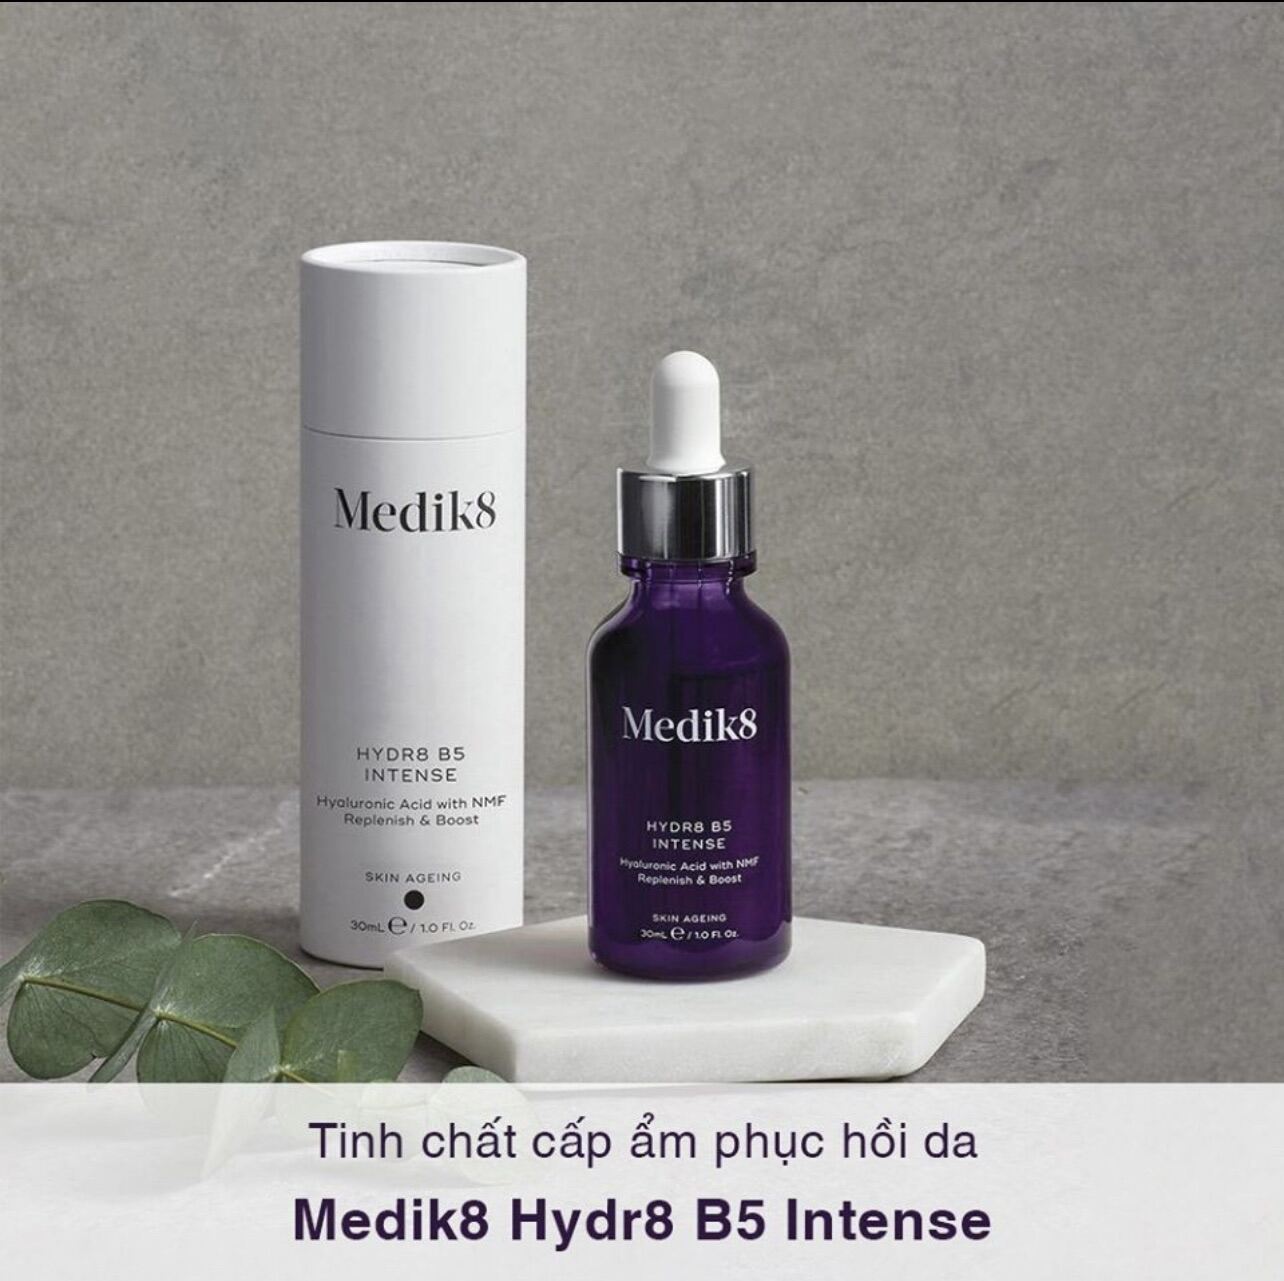 Tinh chất Medik8 Hydra B5 Intense - Phục hồi , chống lão hoá và tăng sức đề kháng cho da